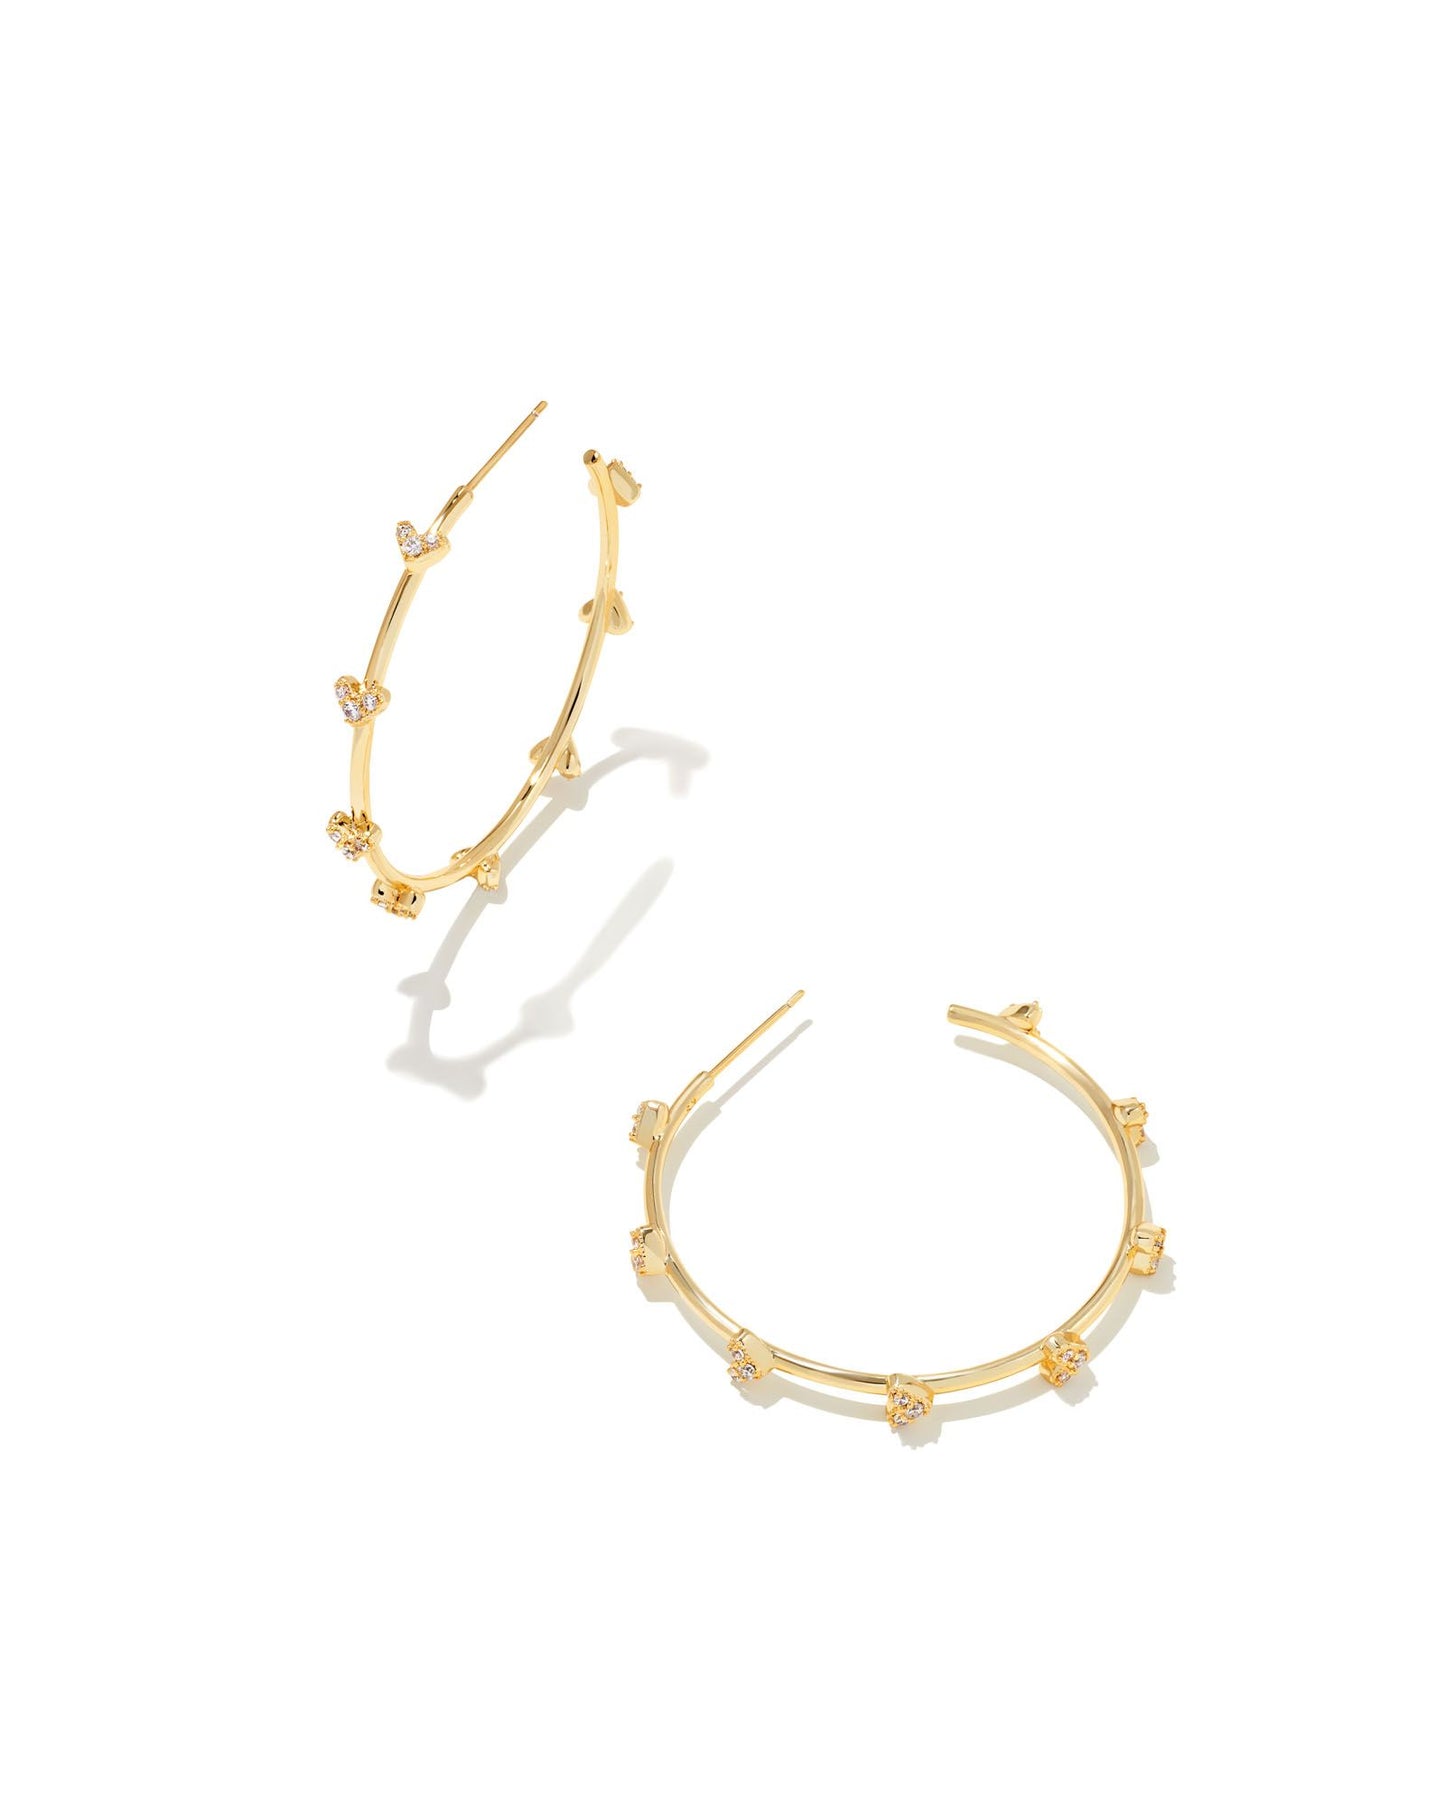 Kendra Scott Haven Heart Hoop Earrings Gold White Crystal-Earrings-Kendra Scott-E1999GLD-The Twisted Chandelier